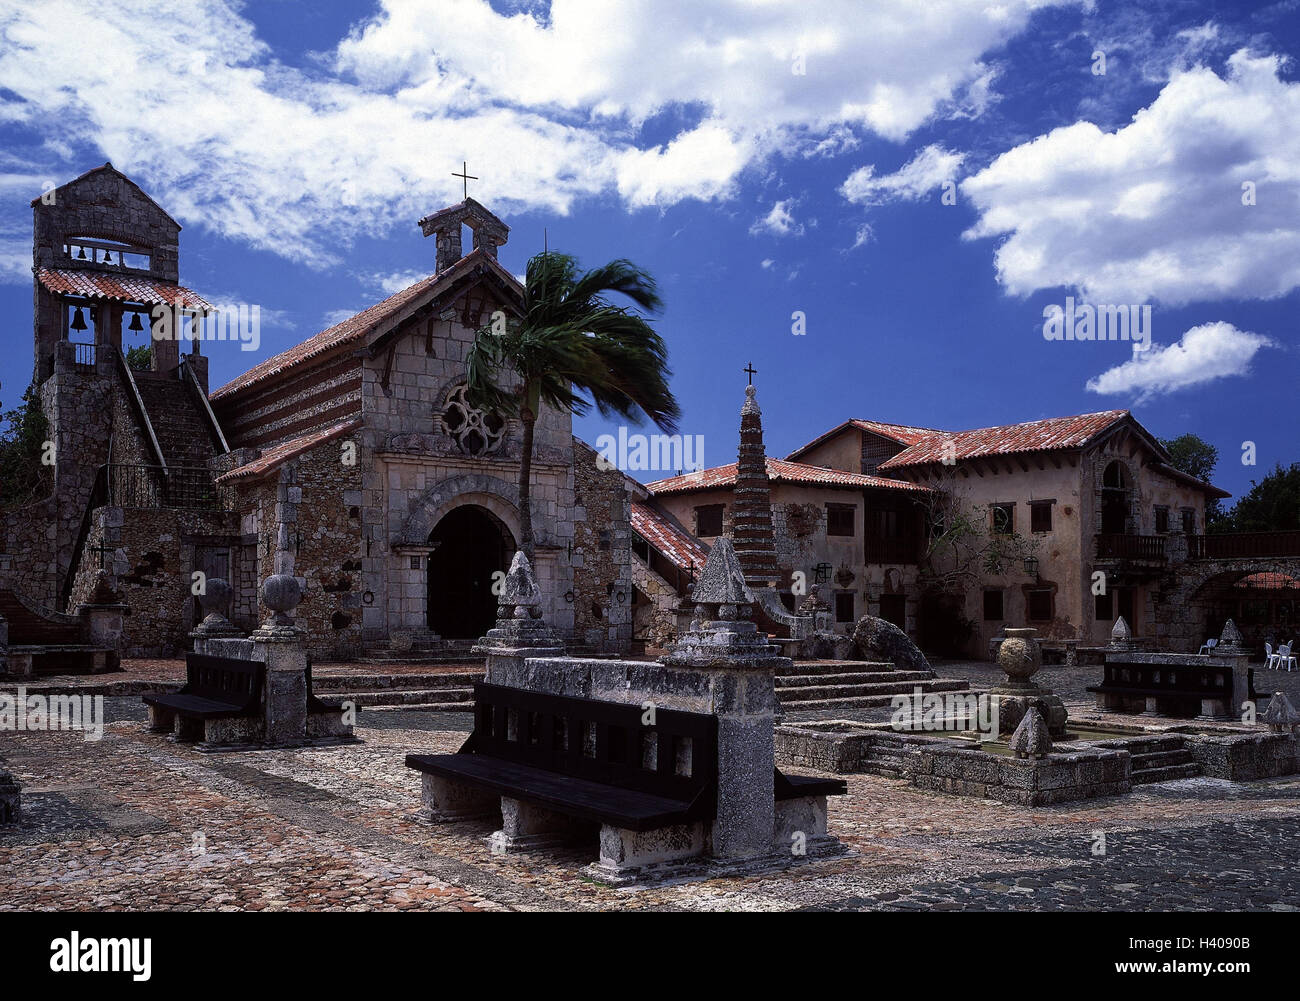 The Dominican Republic, Casa de Campo, Altos de Chavon, local view, church Stock Photo